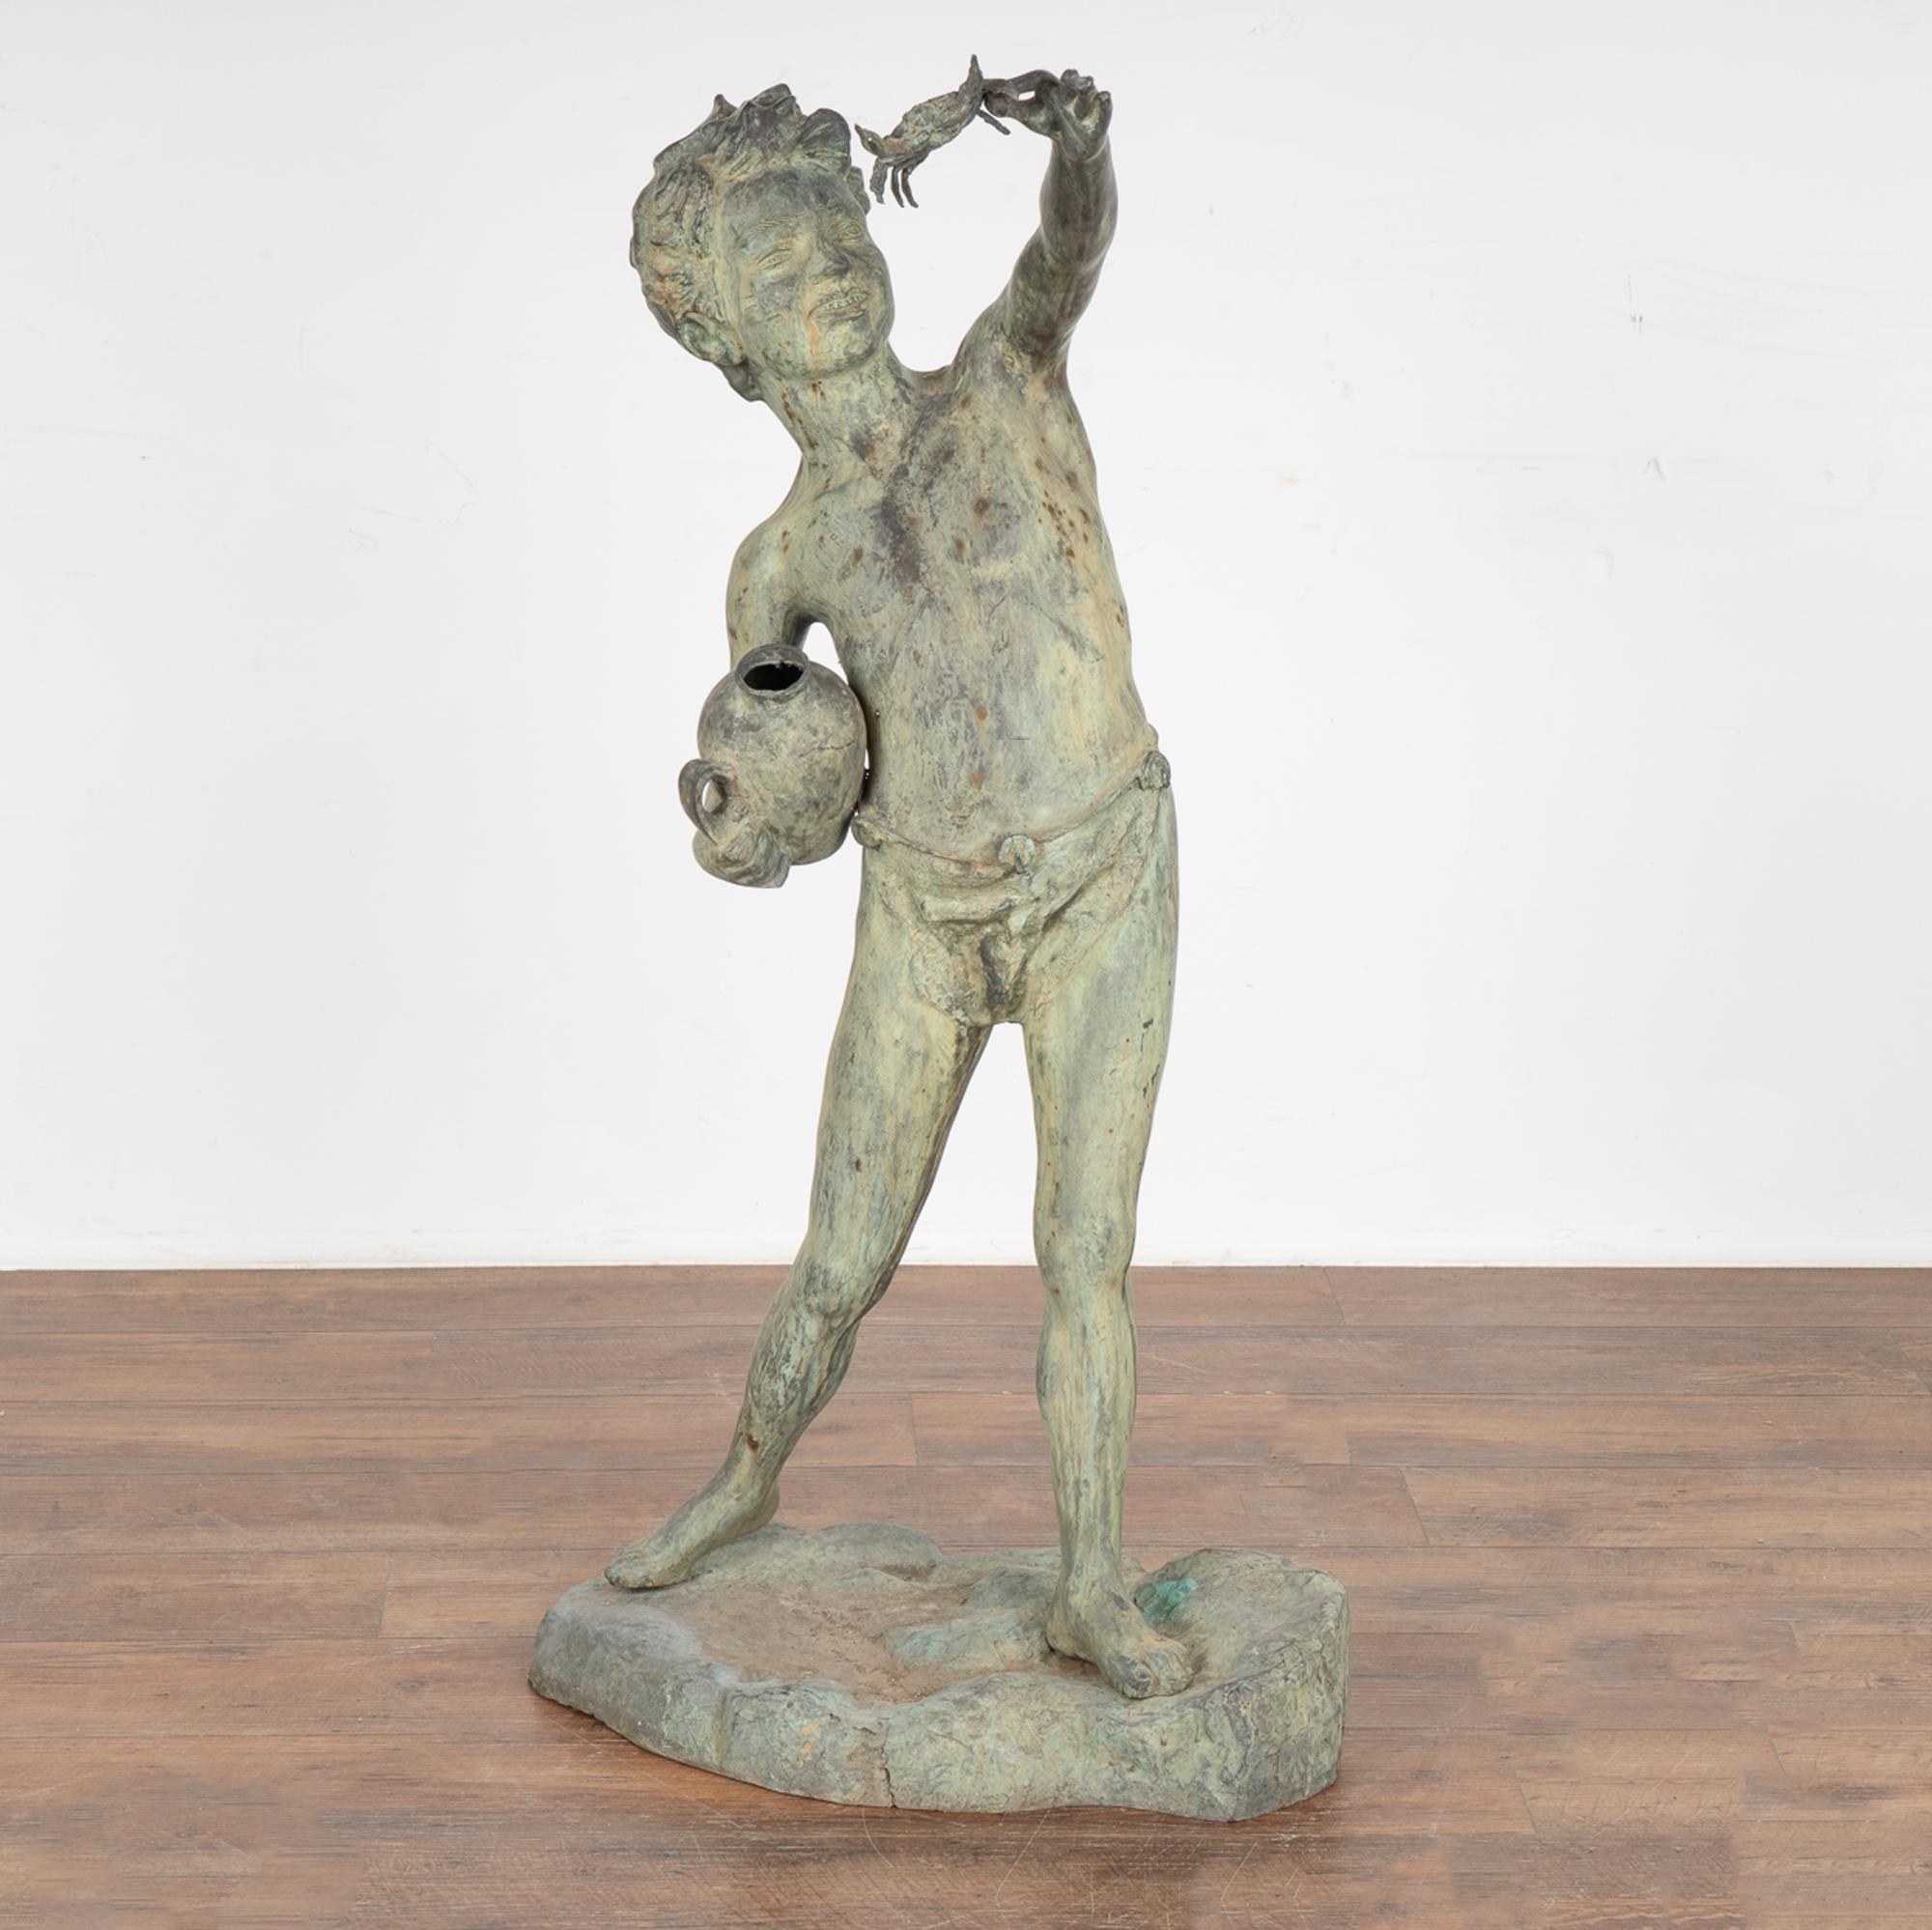 Bronze-Gartenfigur eines stehenden Jungen mit einer Krabbe in der einen und einem Krug in der anderen Hand. 
Verdigris gealterte Patina von Jahren im Freien.
Wird in gebrauchtem Originalzustand verkauft. Etwaige Schrammen, Kratzer, Dellen und Risse